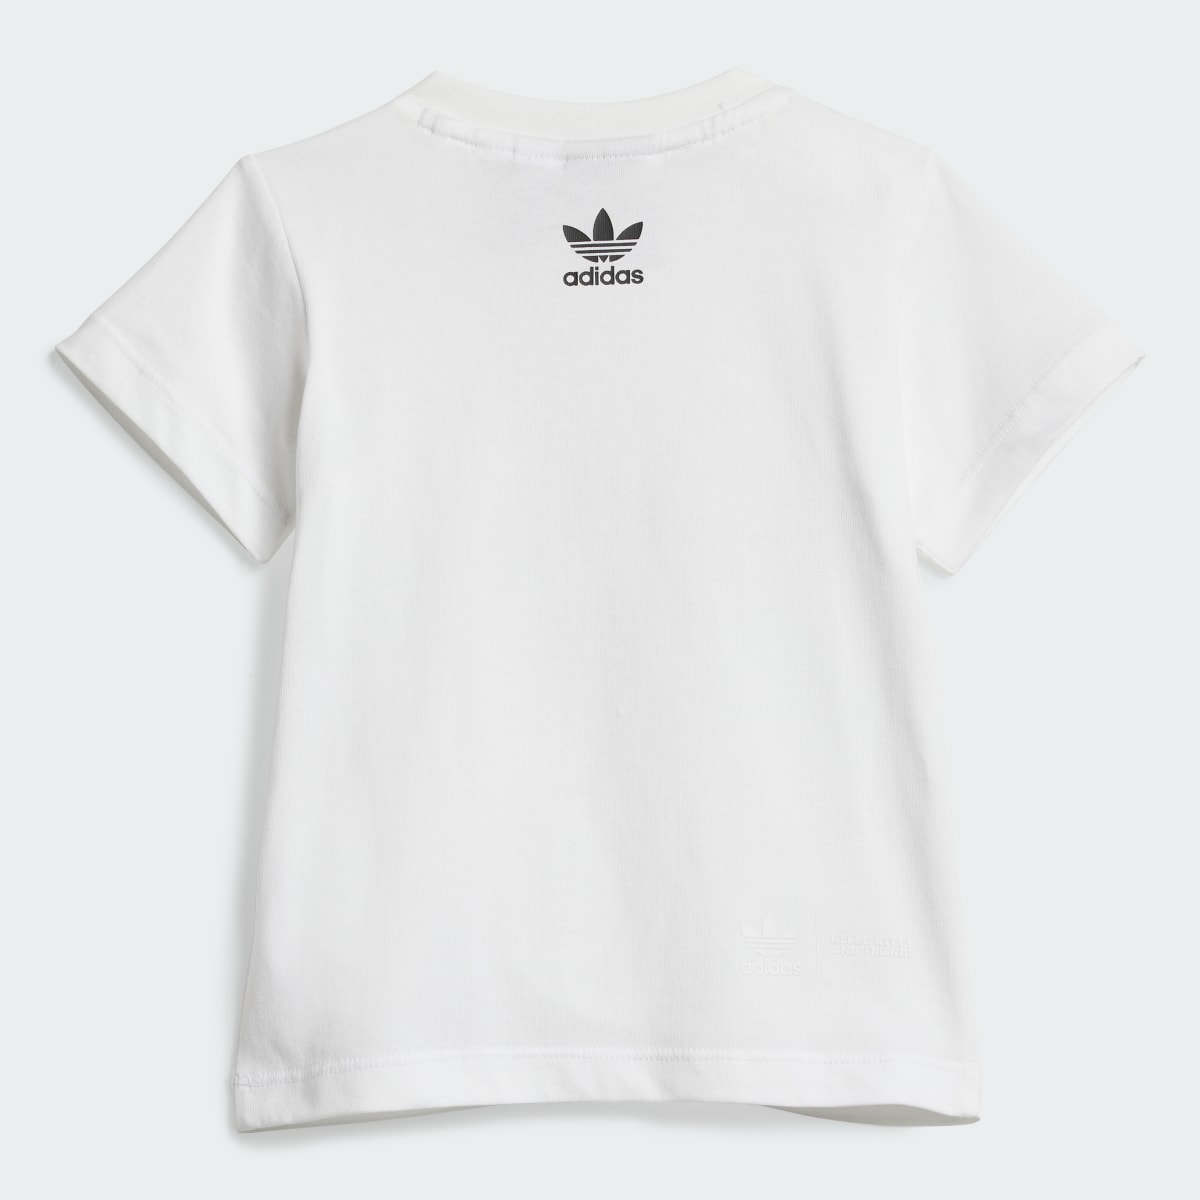 Adidas Originals x Hello Kitty Şort Tişört Takımı. 4